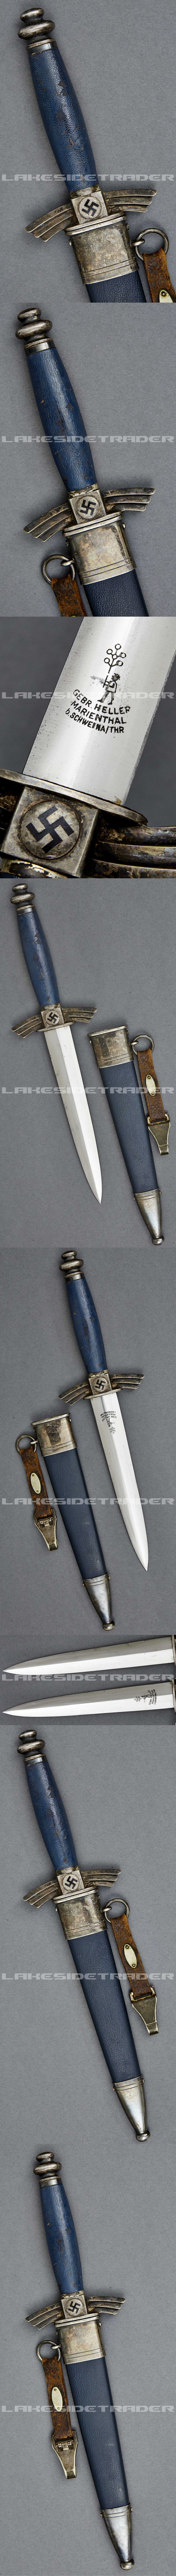 A Model 1934 DLV Service Dagger